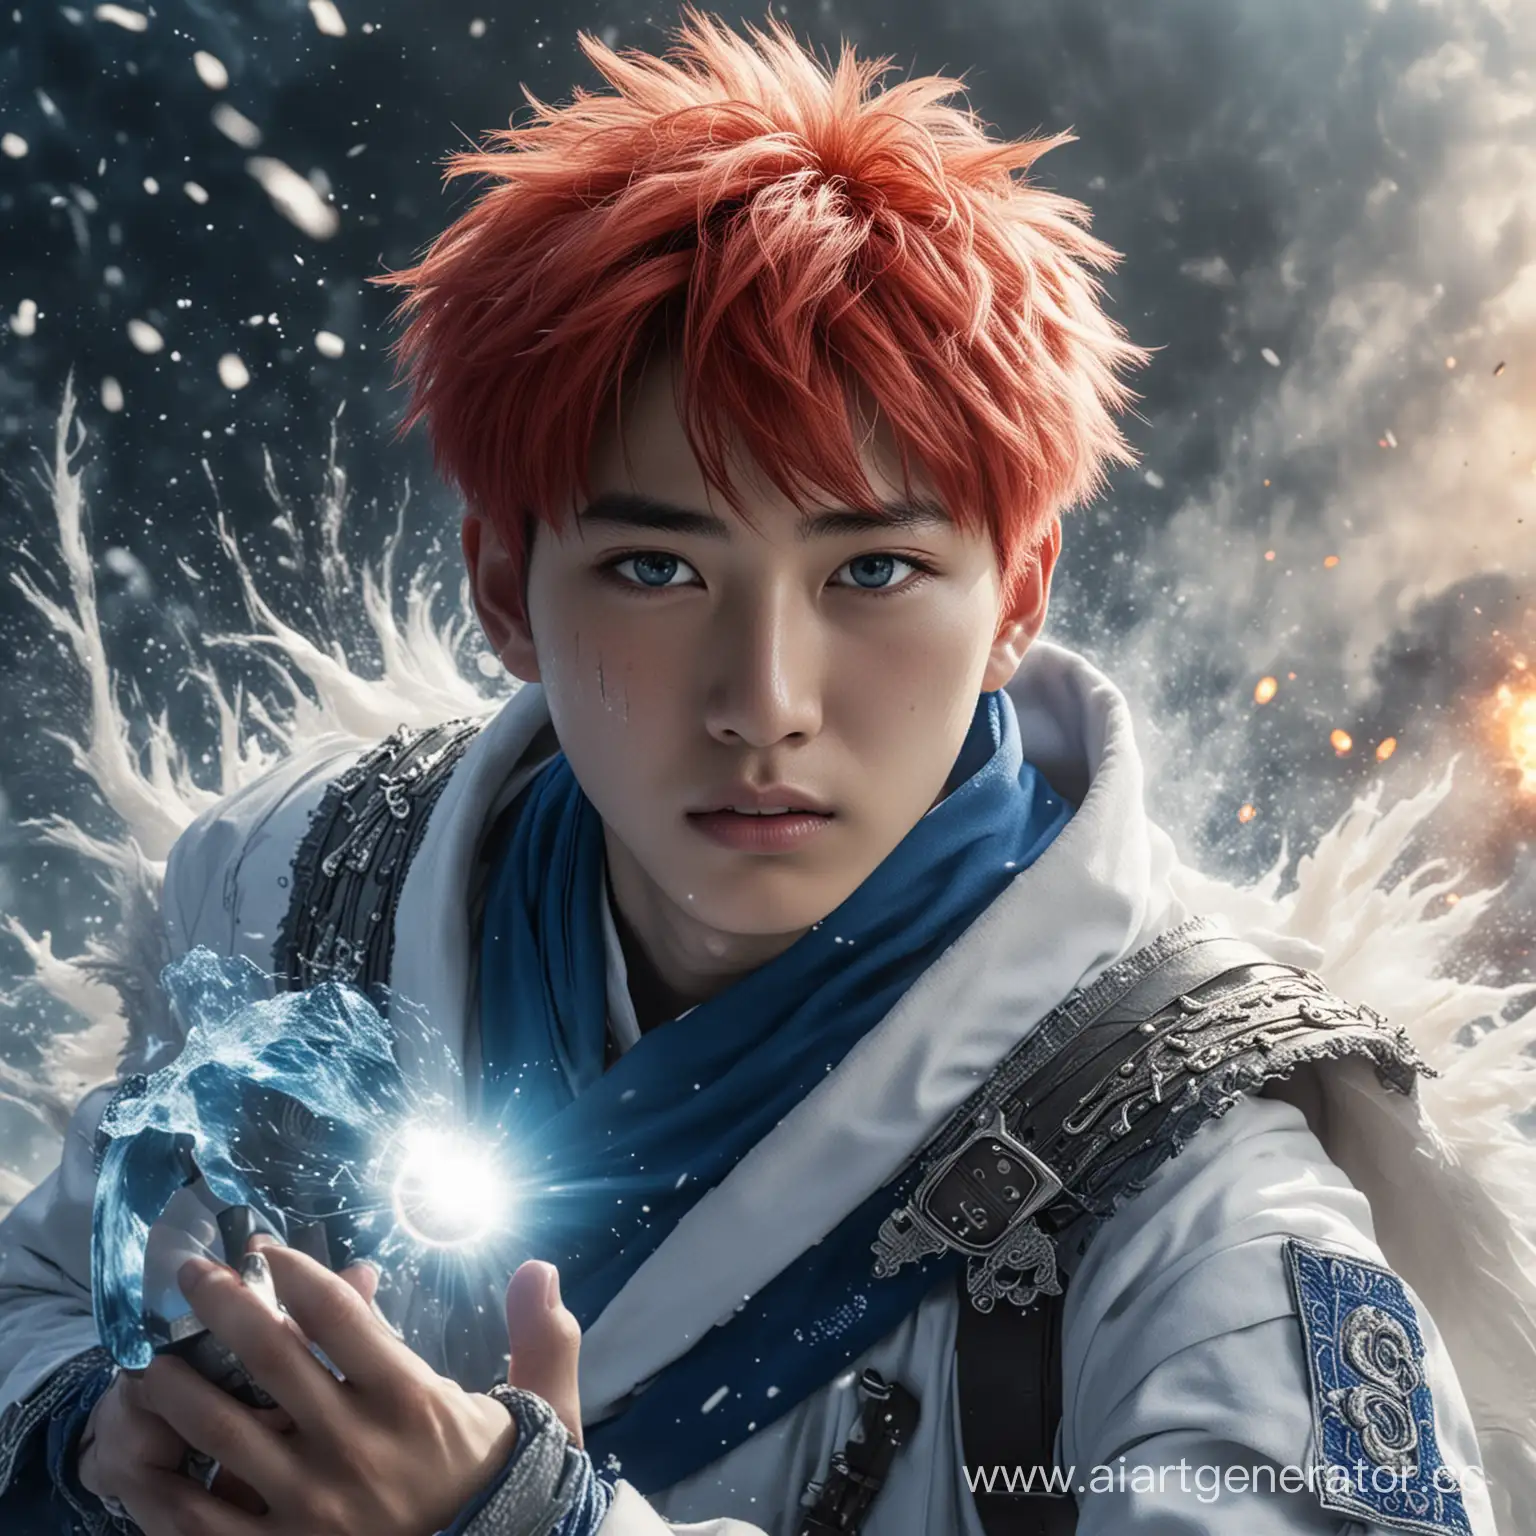 красивый парень кореец 16 лет, красно-белые волосы, голубые глаза, шрам на правом глазу, сине-белый геройский костюм, на фоне ледяного взрыва с огненным шаром в руках